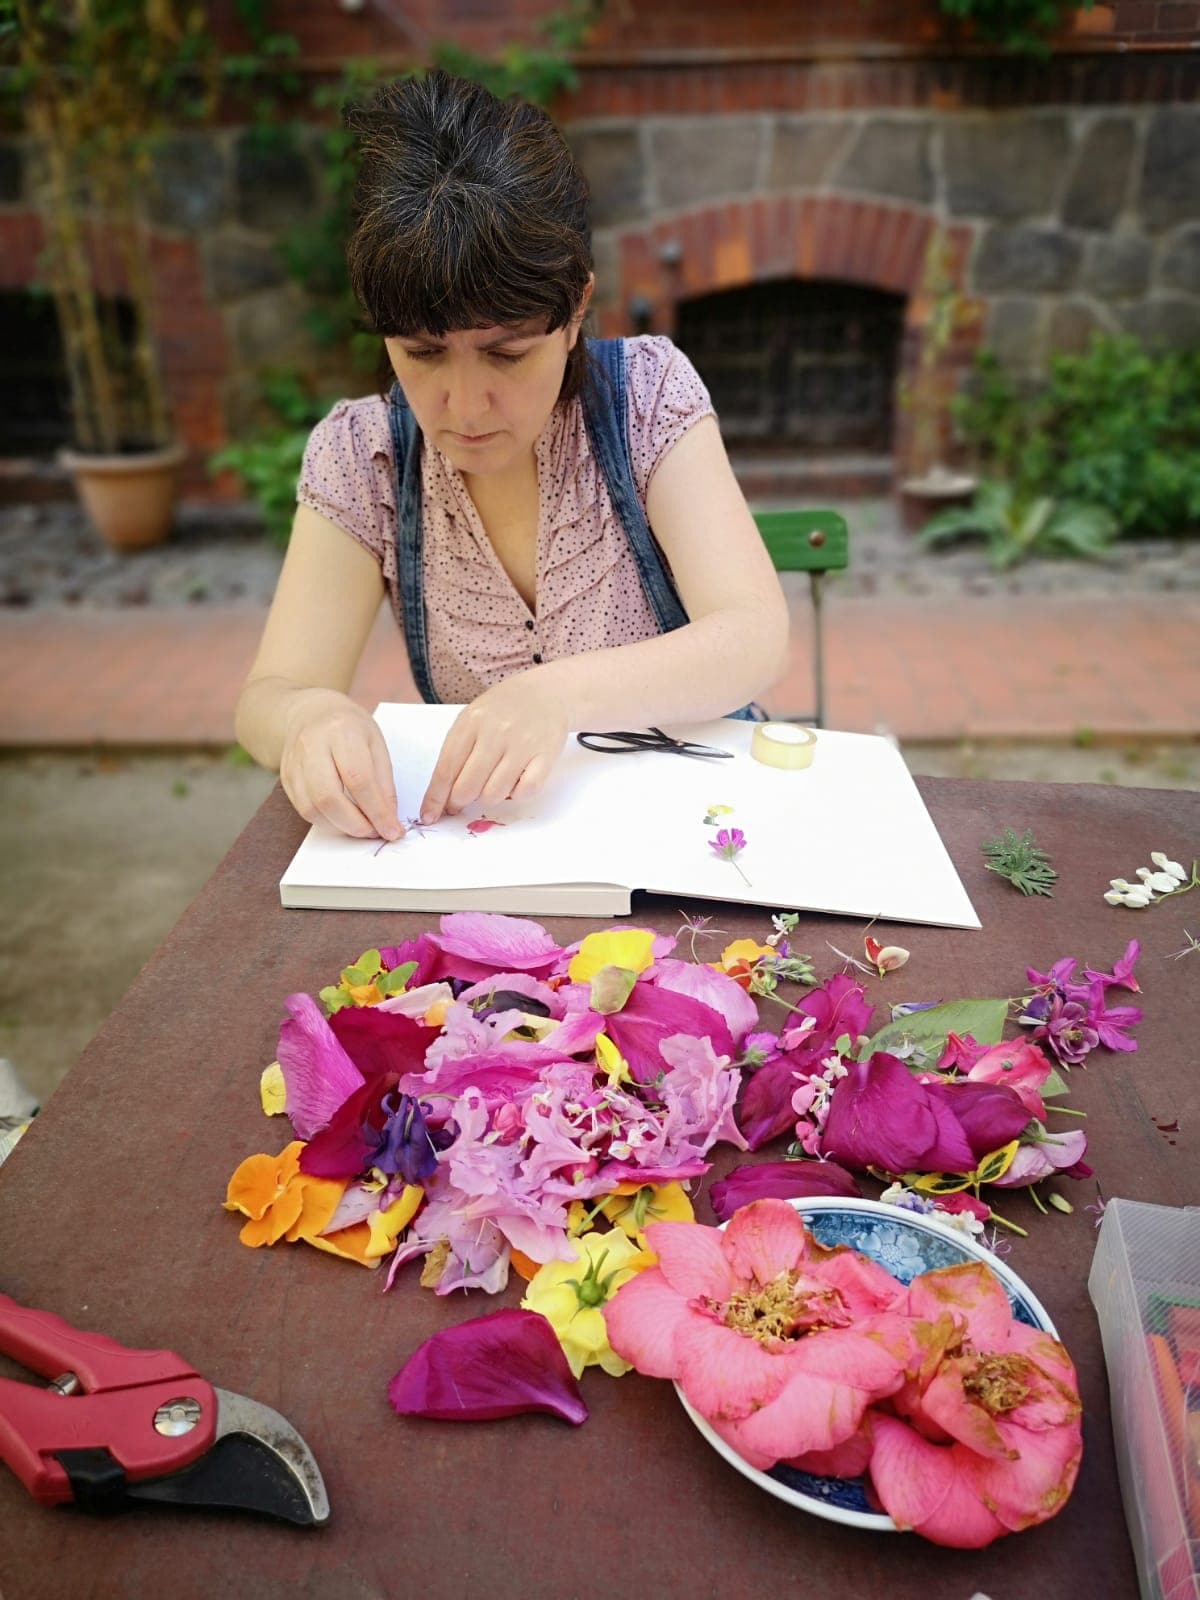 Eine Frau sitzt an einem Holztisch und klebt Blumen in ein Buch. Vor ihr sind viele bunte Blumen ausgebreitet.